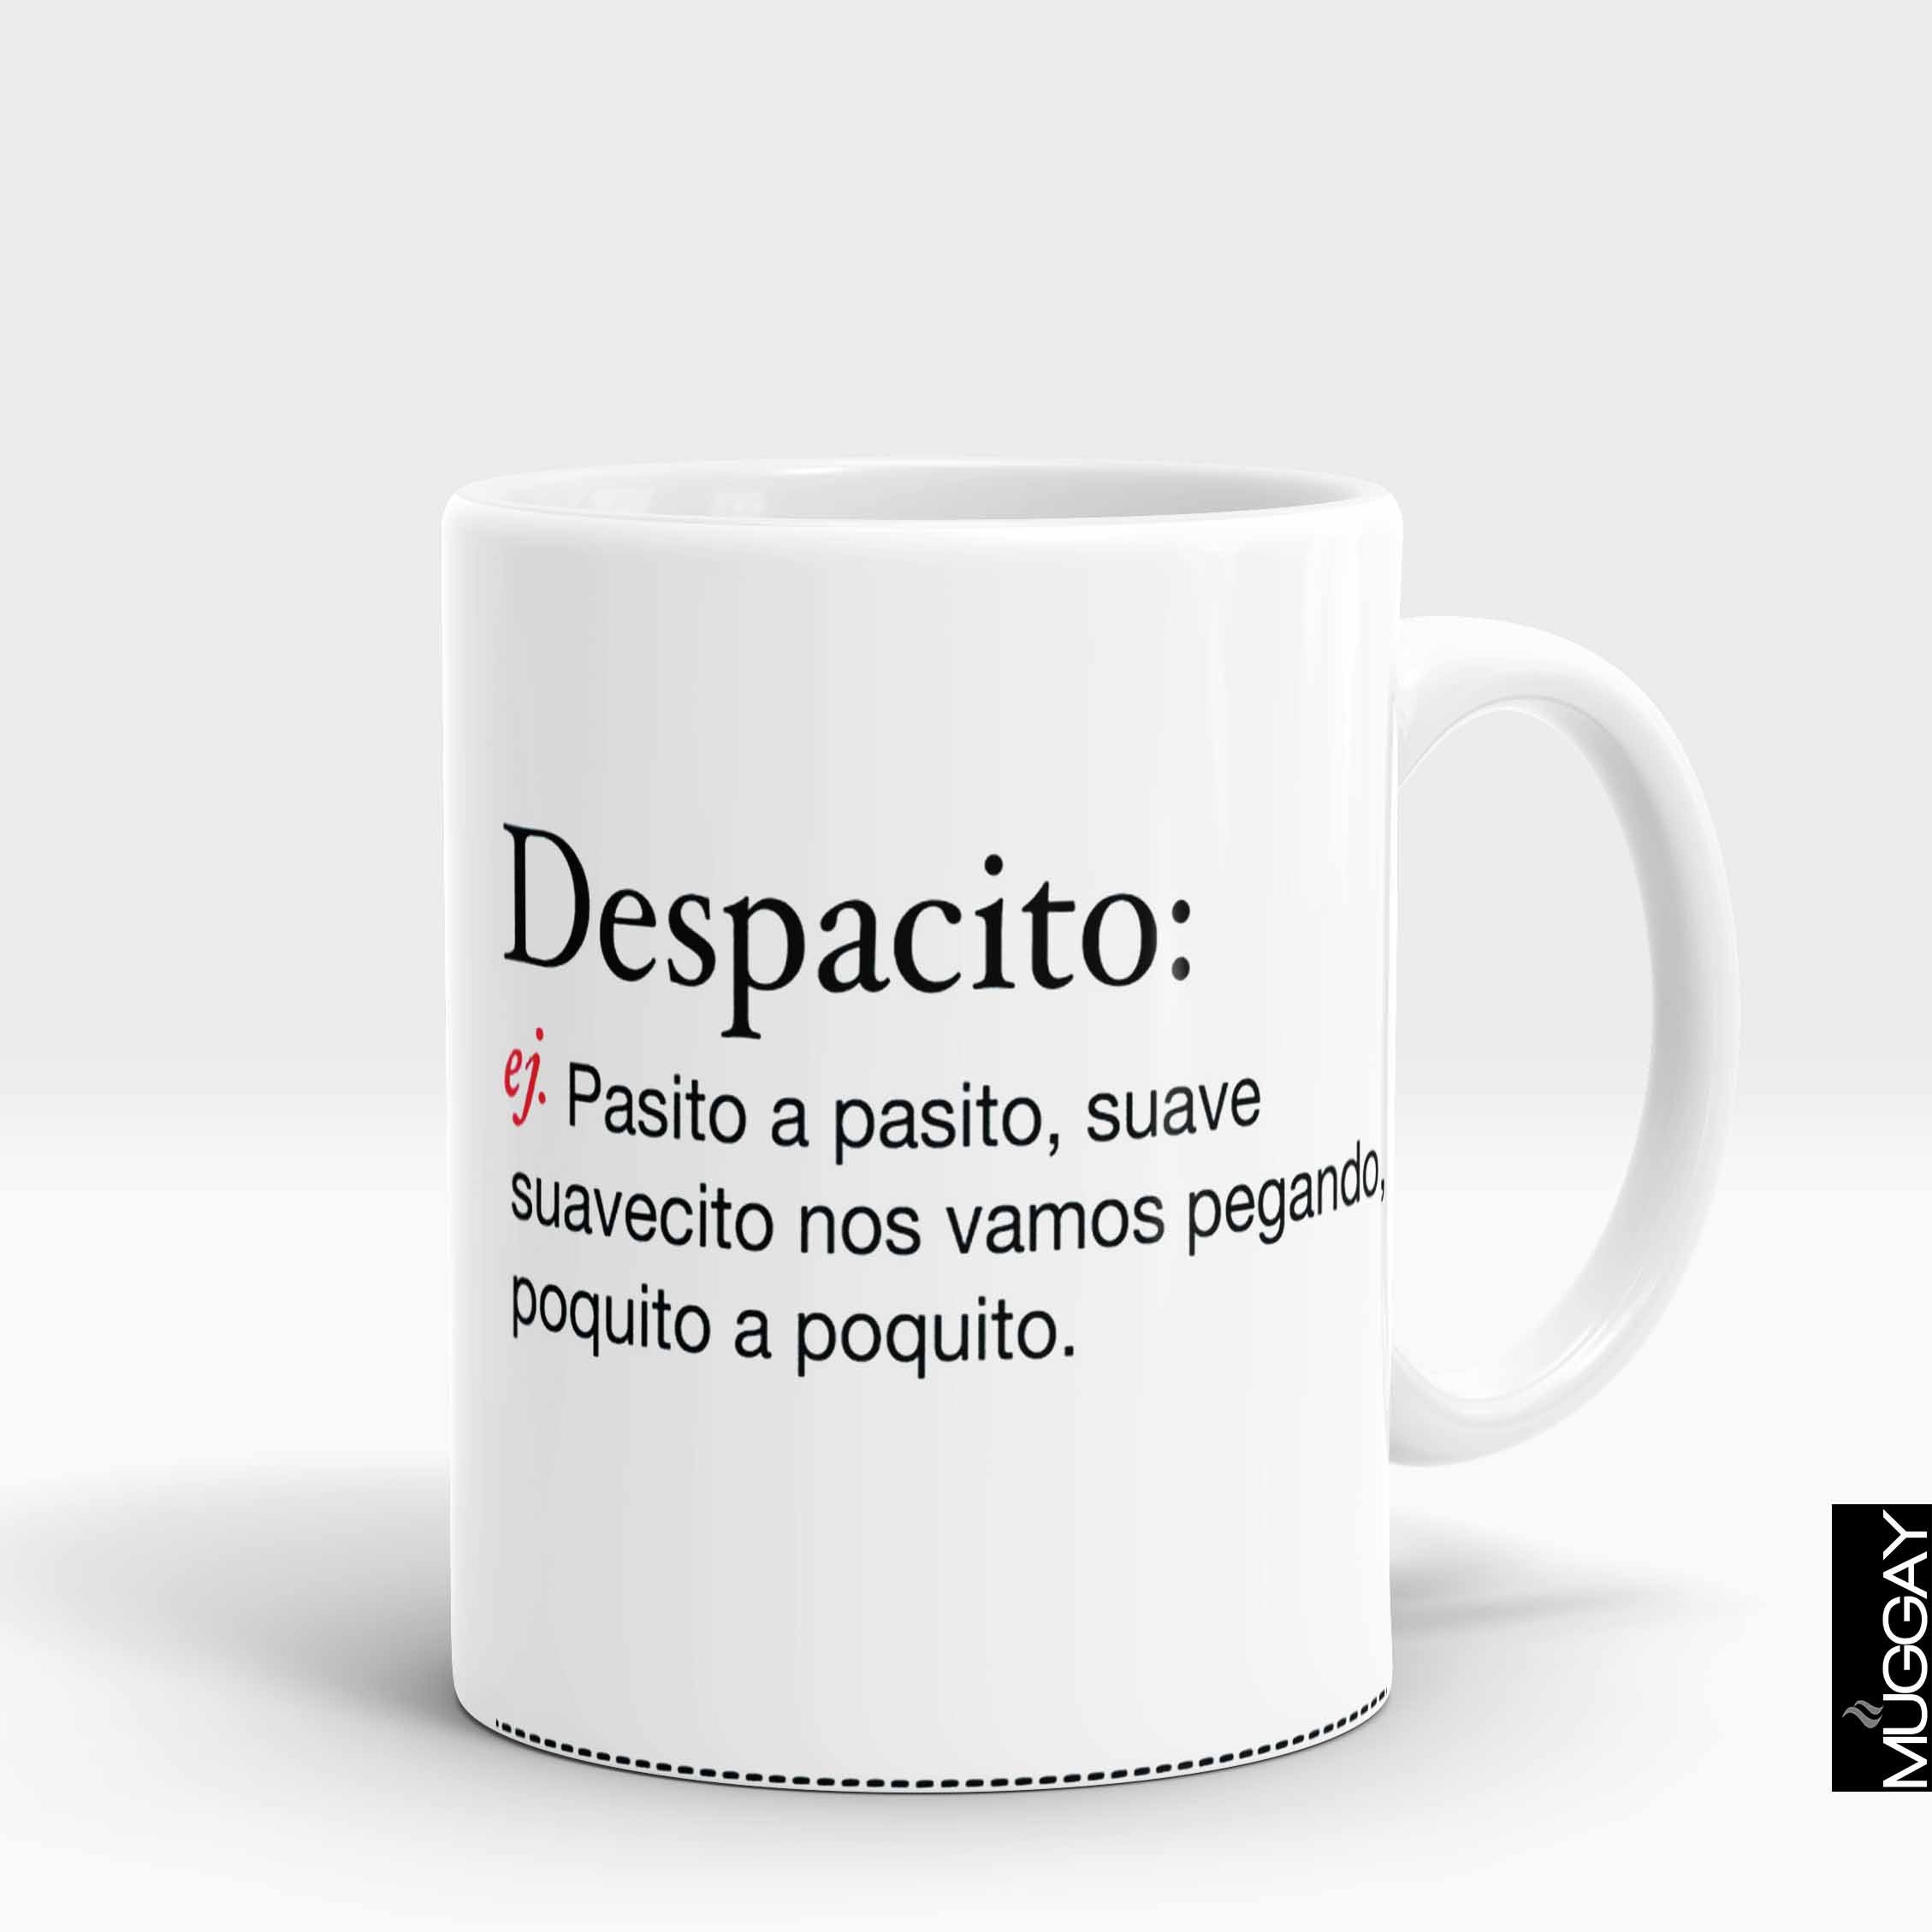 Decpacito Lyrics - Muggay.com - Mugs - Printing shop - truck Art mugs - Mug printing - Customized printing - Digital printing - Muggay 